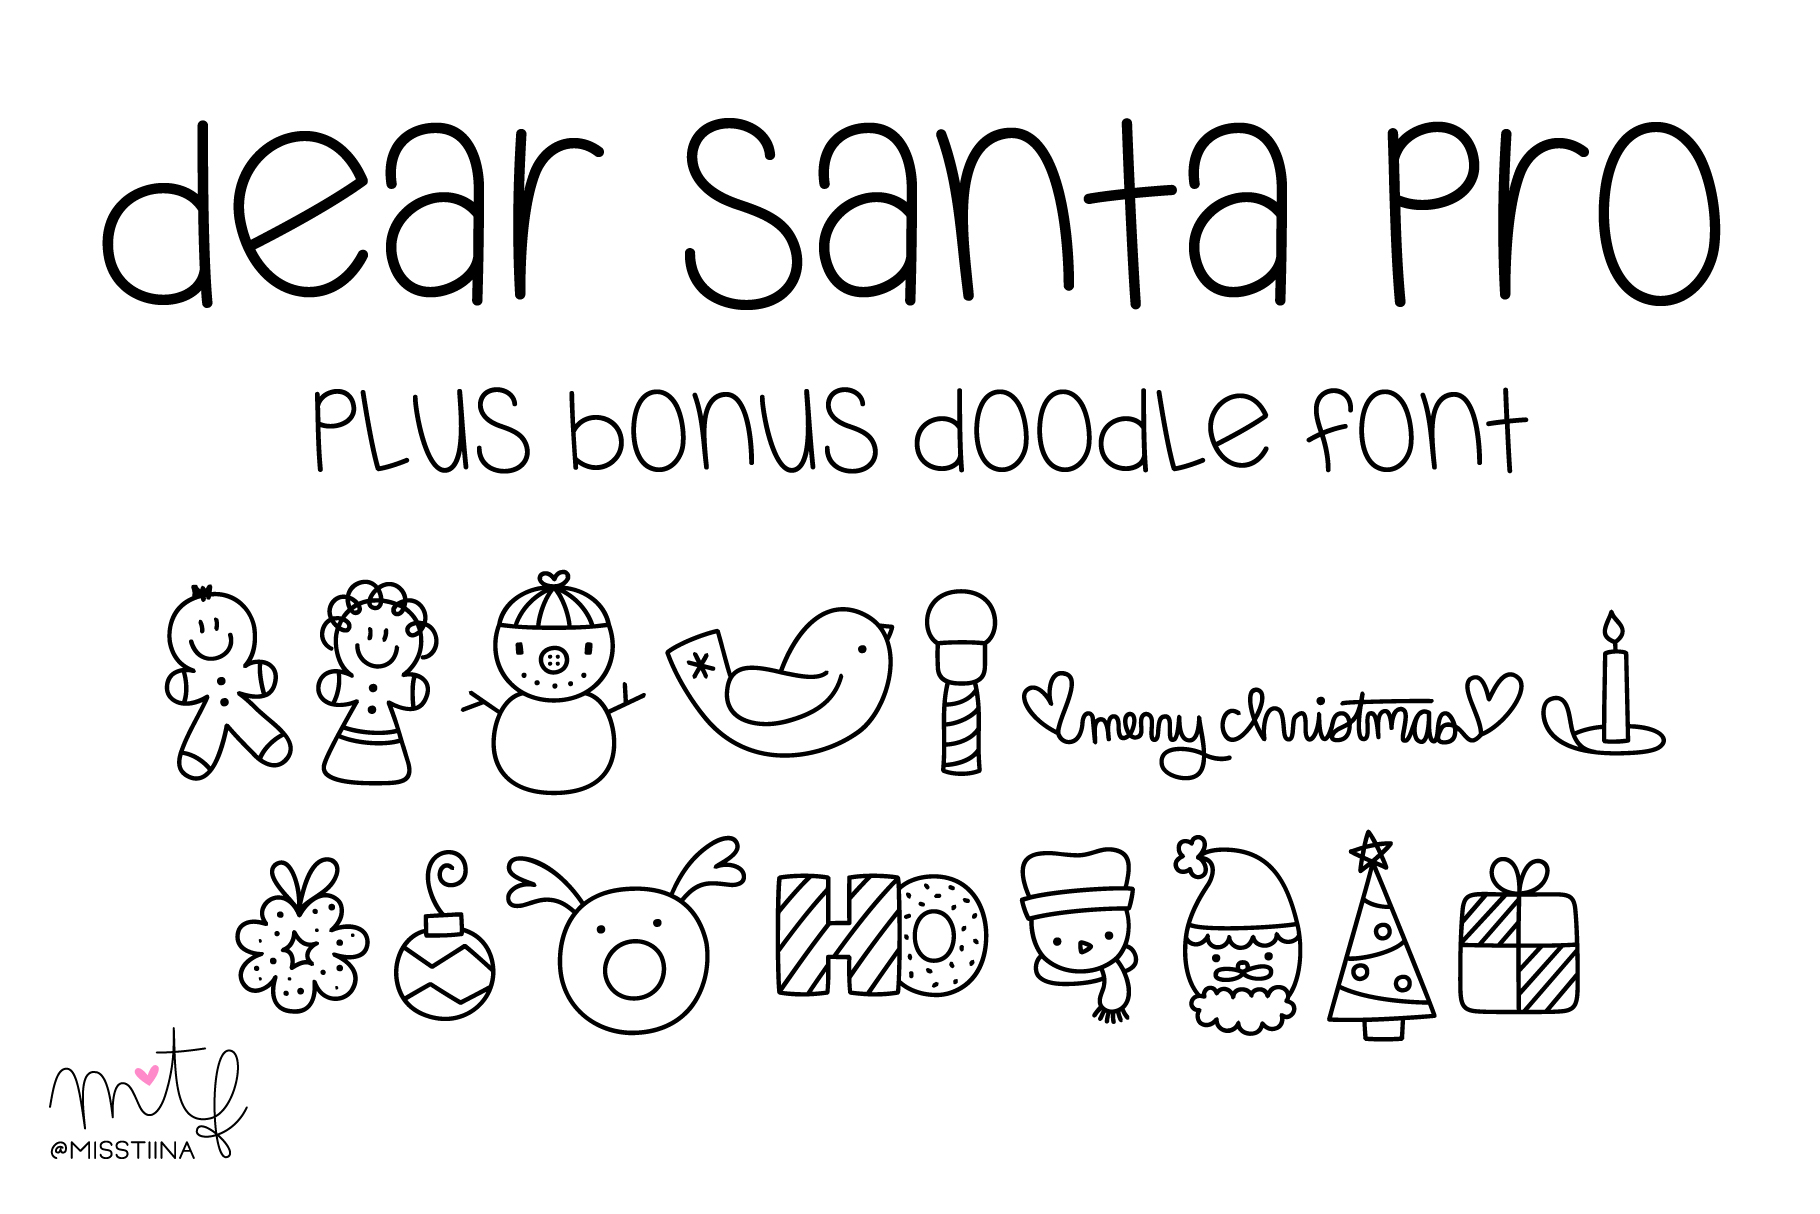 Dear Santa Pro